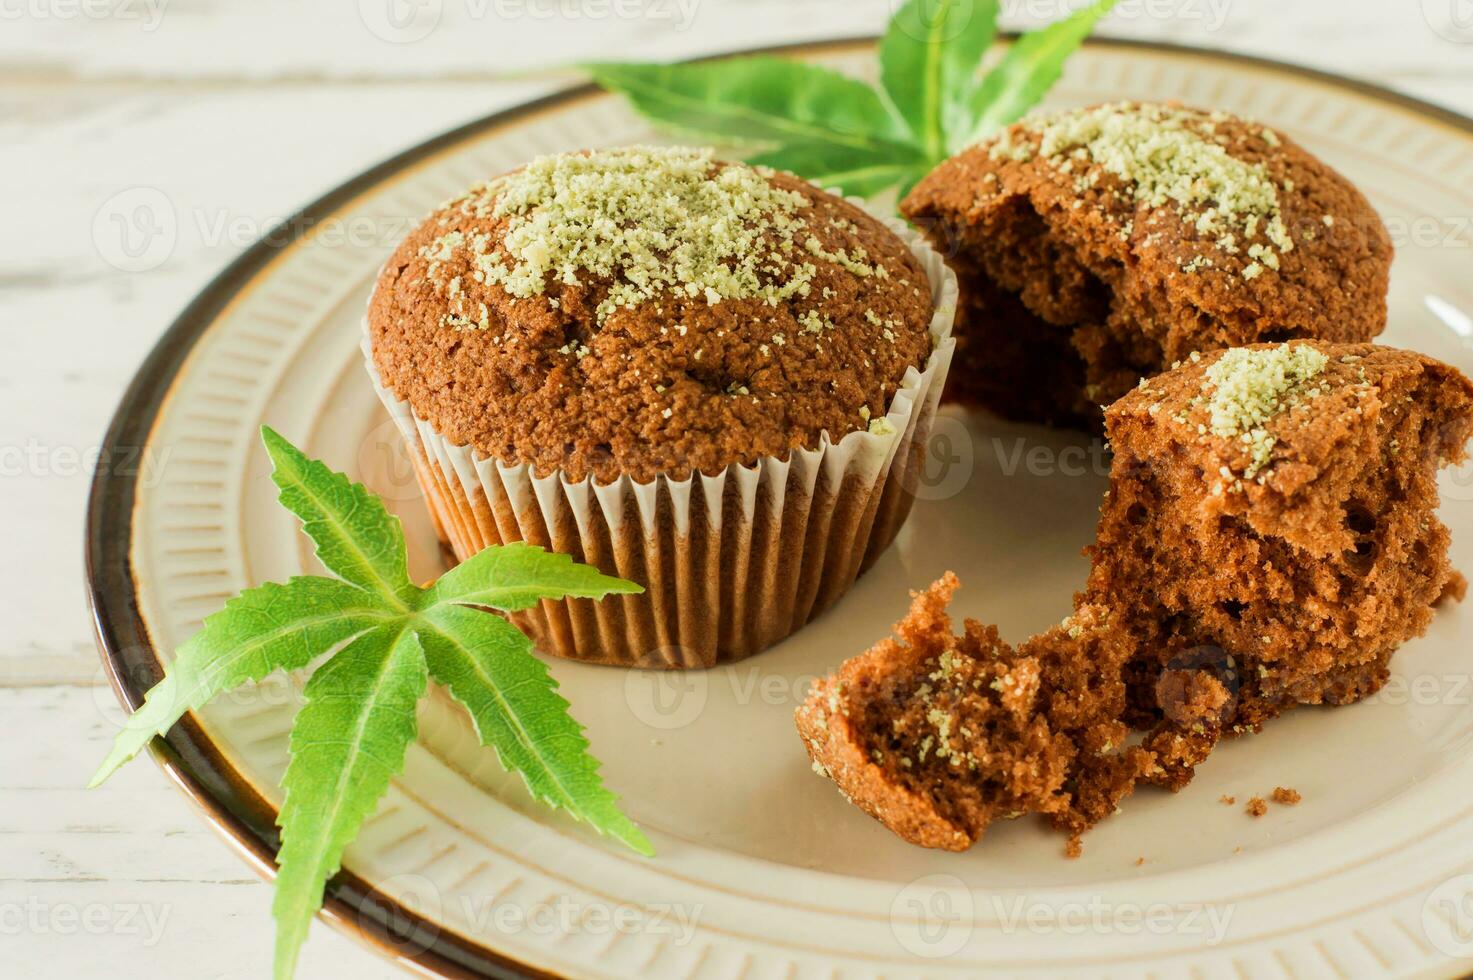 koekje met marihuana. smakelijk koekje muffins met hennep onkruid cbd. medisch marihuana verdovende middelen in voedsel nagerecht, ganja legalisatie. foto